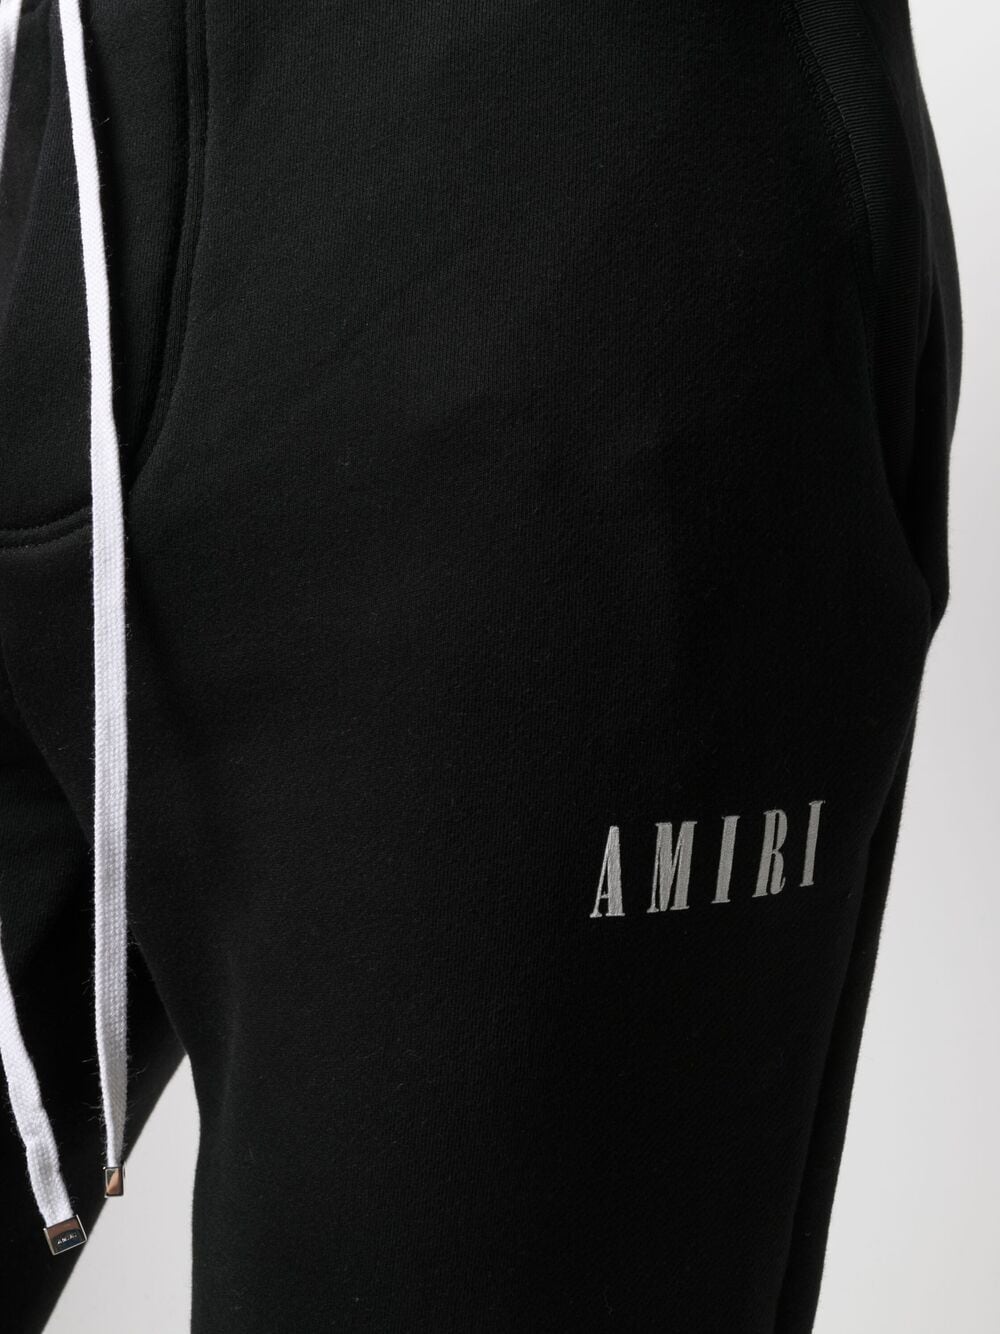 AMIRI LOGO PRINT TRACK PANTS - Clothes Rep